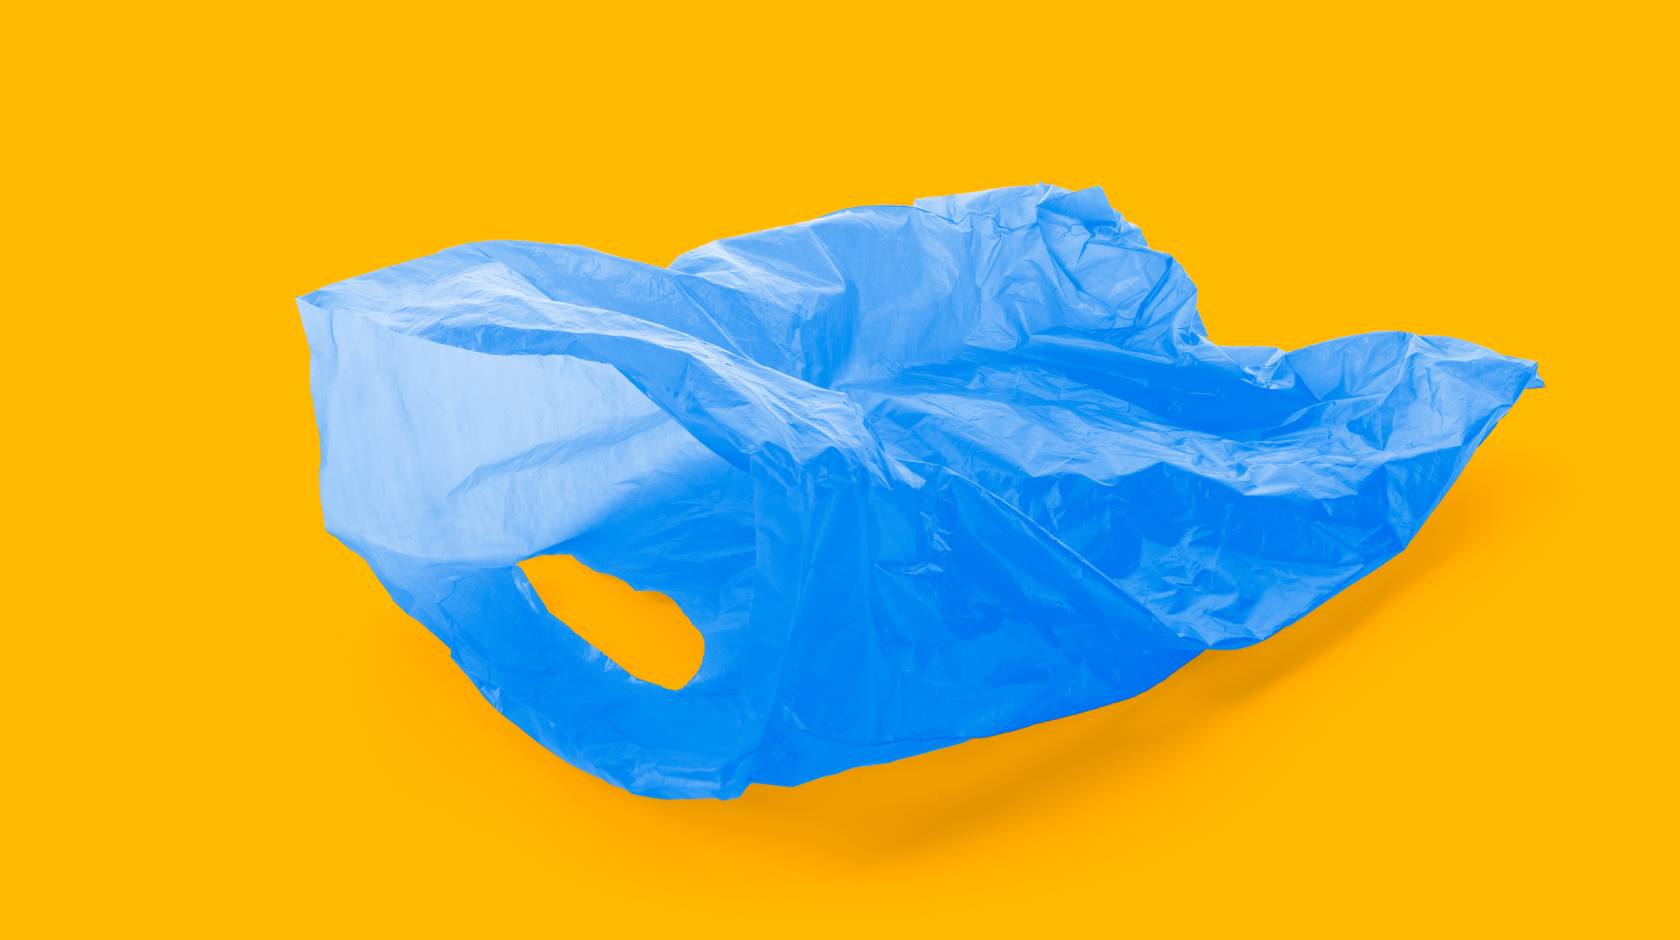 Blue plastic bag on gold background